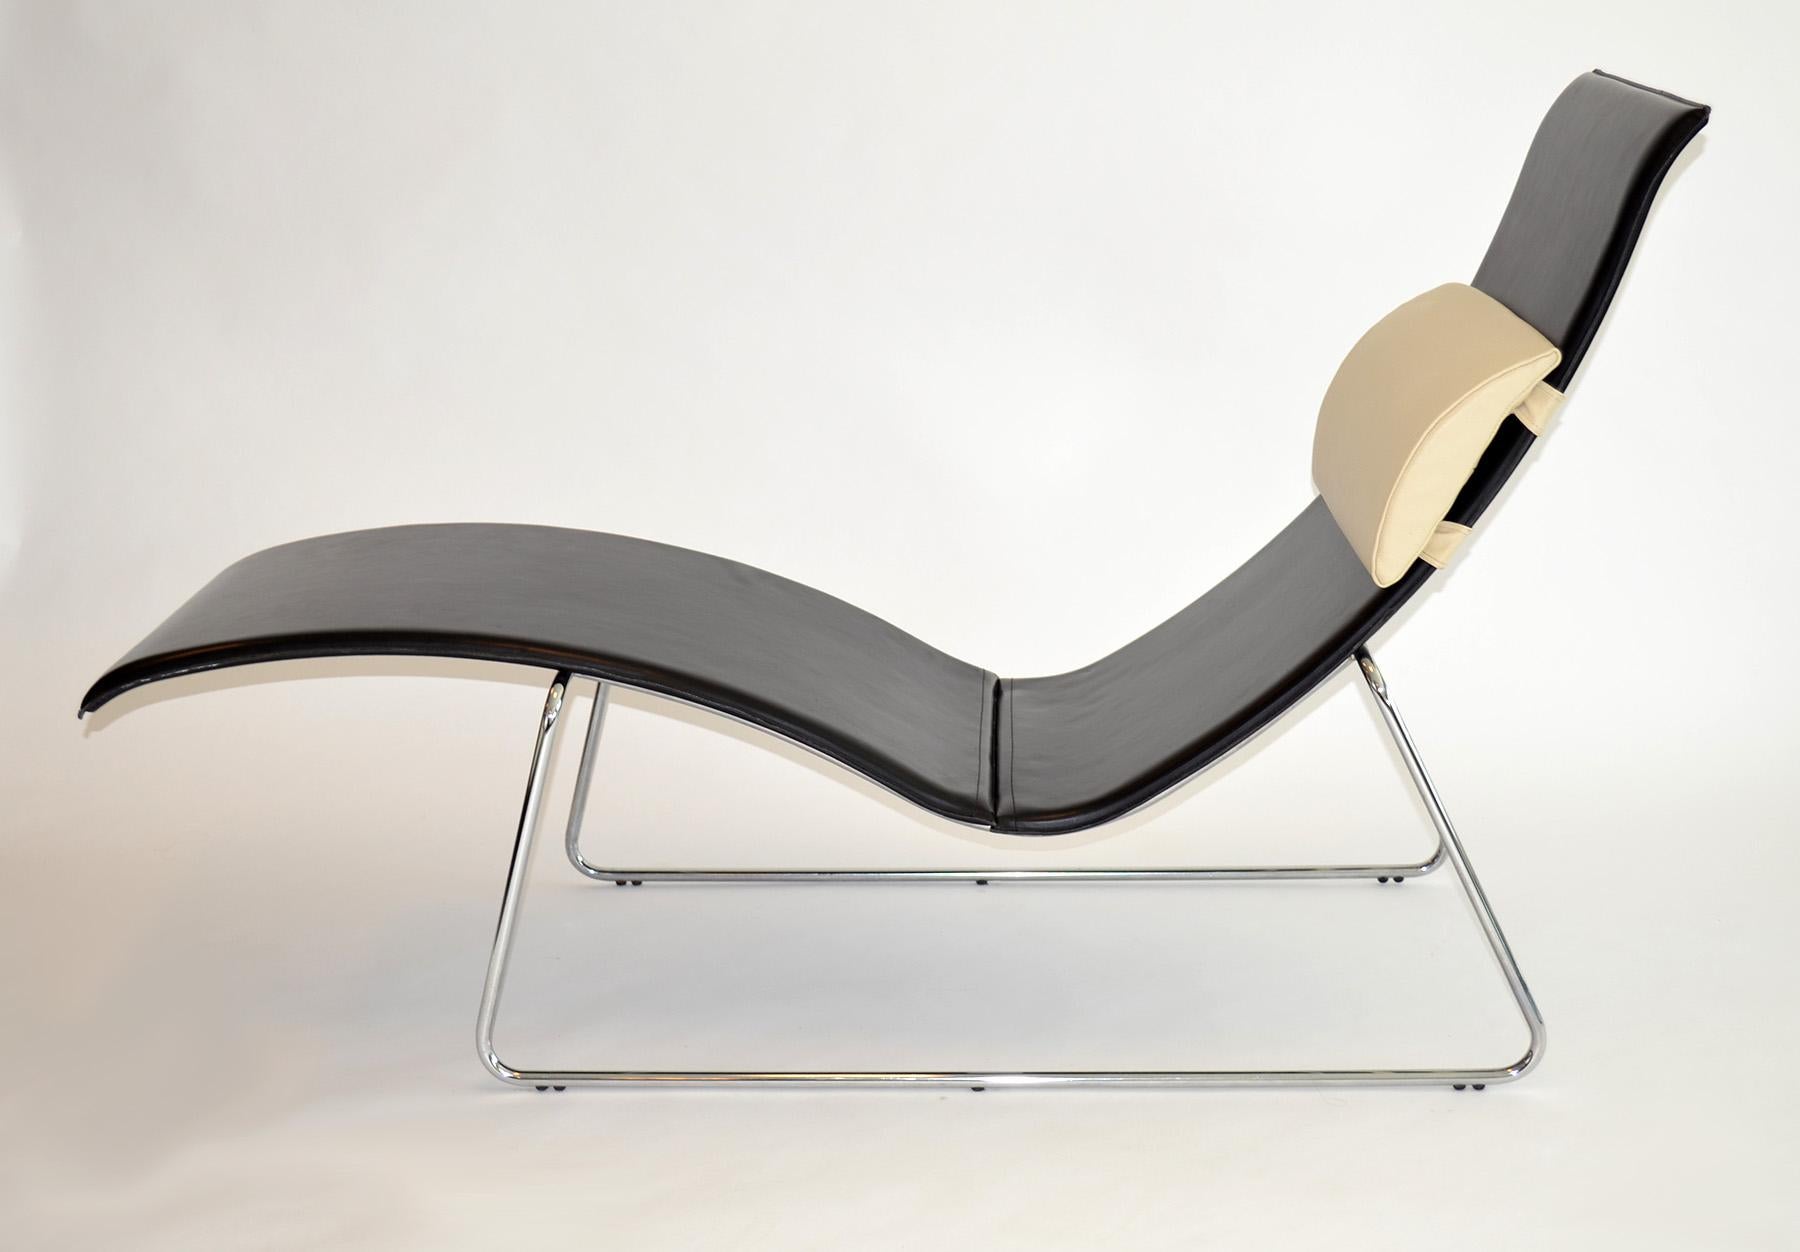 Chaiselongue oder Loungesessel aus schwarzem Leder auf Stahlfuß 1990er Jahre Italien
Schlankes, elegantes Profil mit hochwertig genähter, dicker schwarzer Lederlongue, die auf einem minimalistischen verchromten Stahlsockel mit einem cremefarbenen